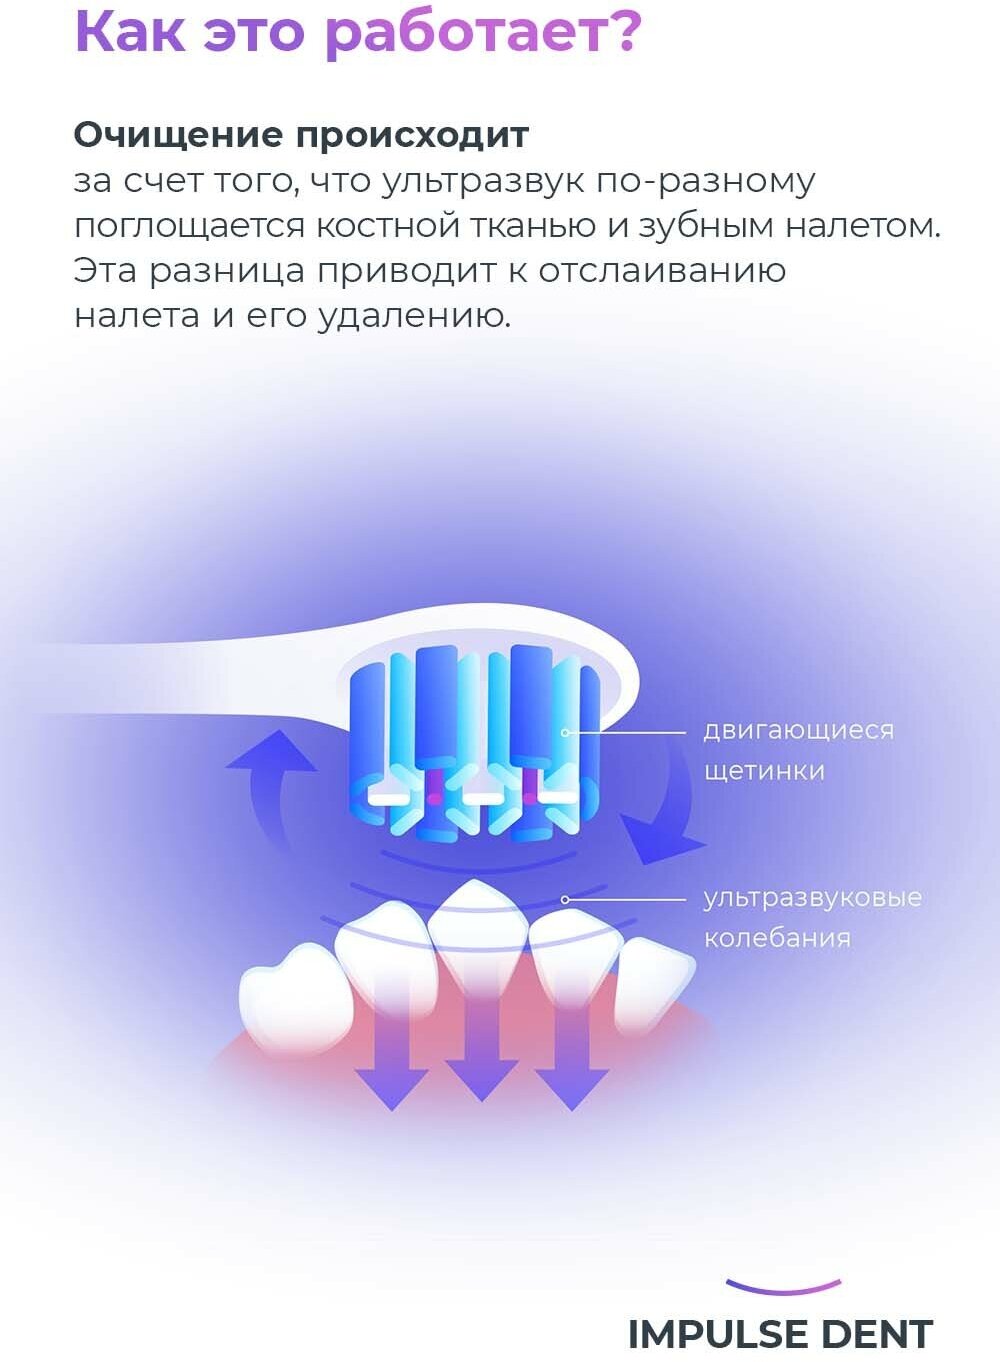 Электрическая зубная щетка Impulse Dent